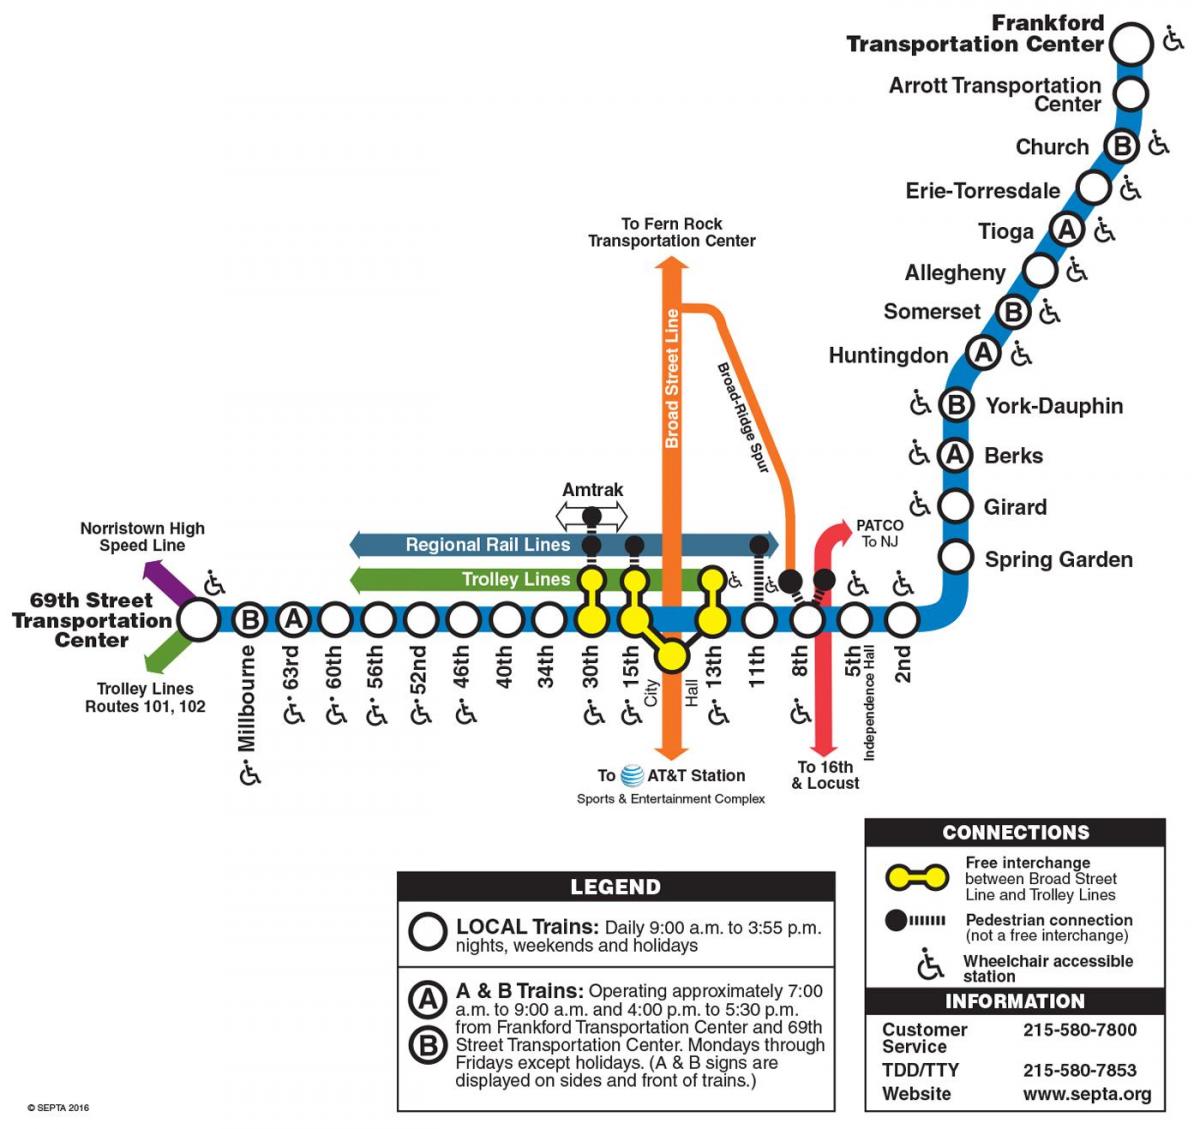 kaart turul frankford line